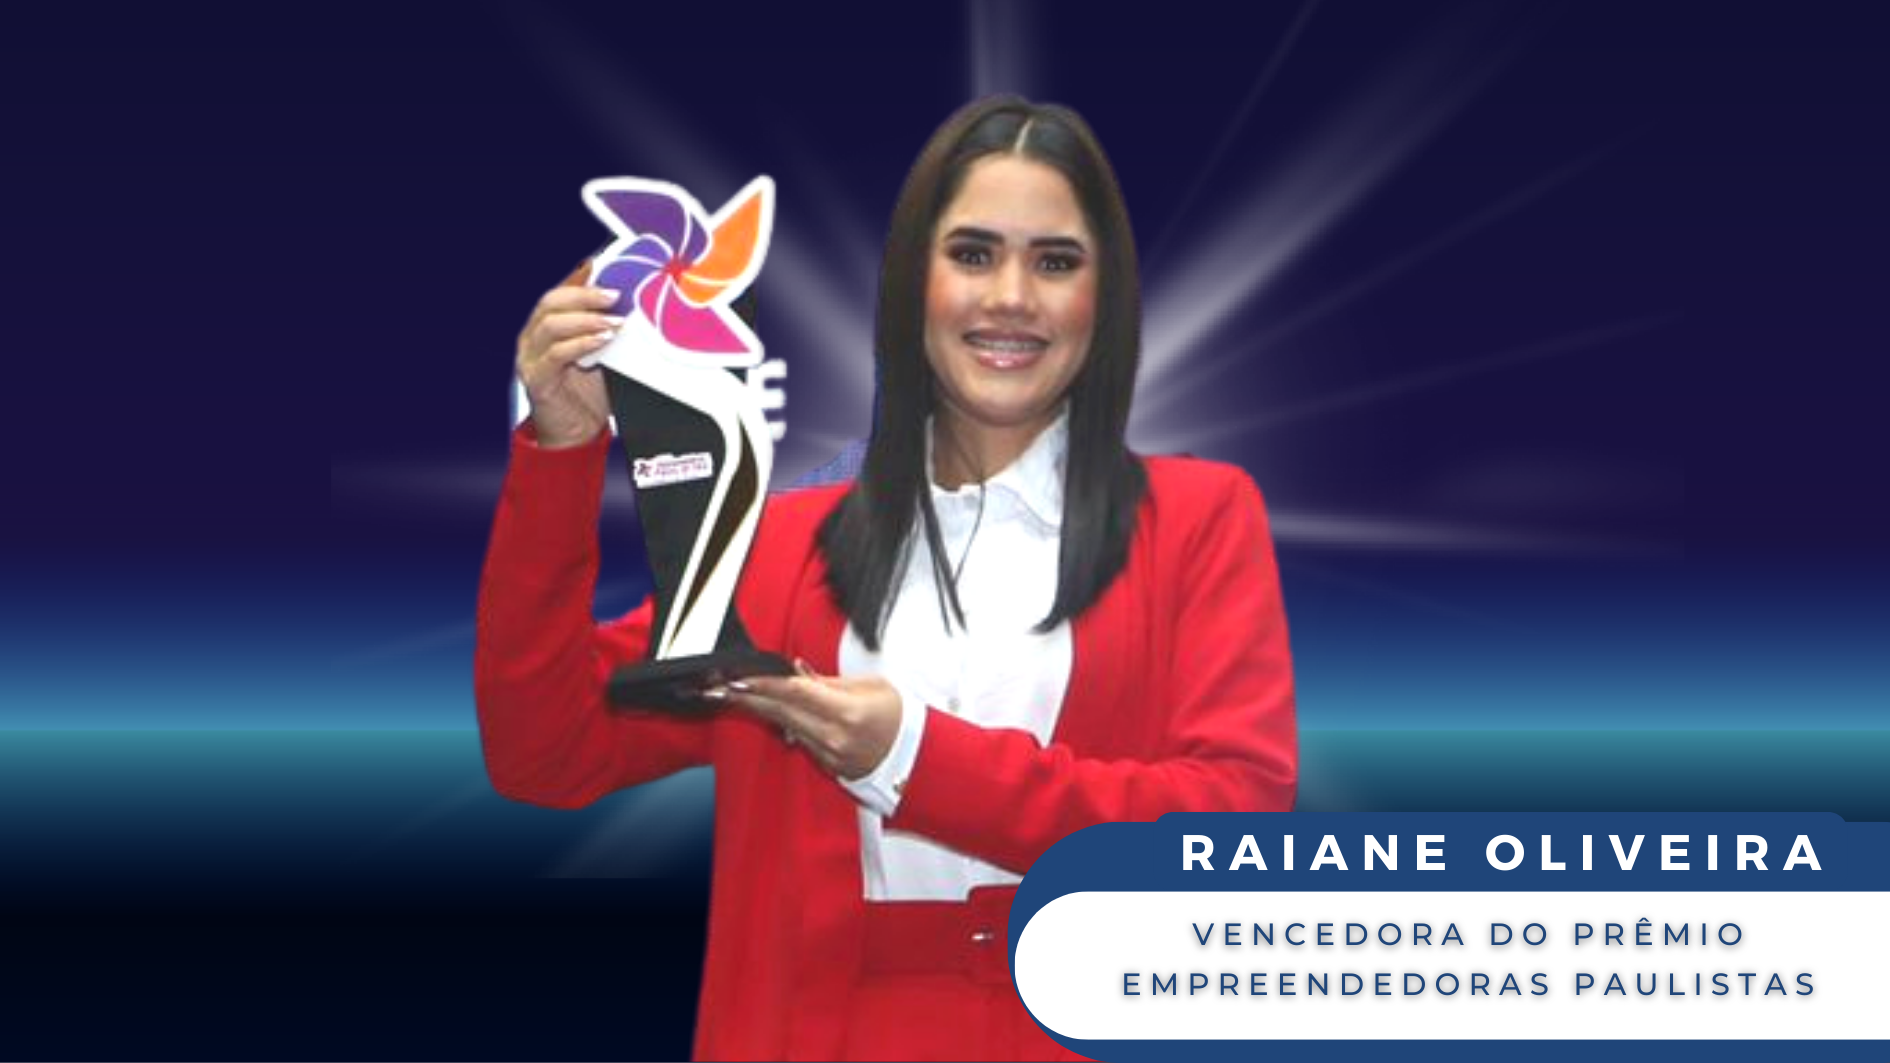 Conheça a empreendedora jandirense que venceu o Prêmio Empreendedoras Paulistas